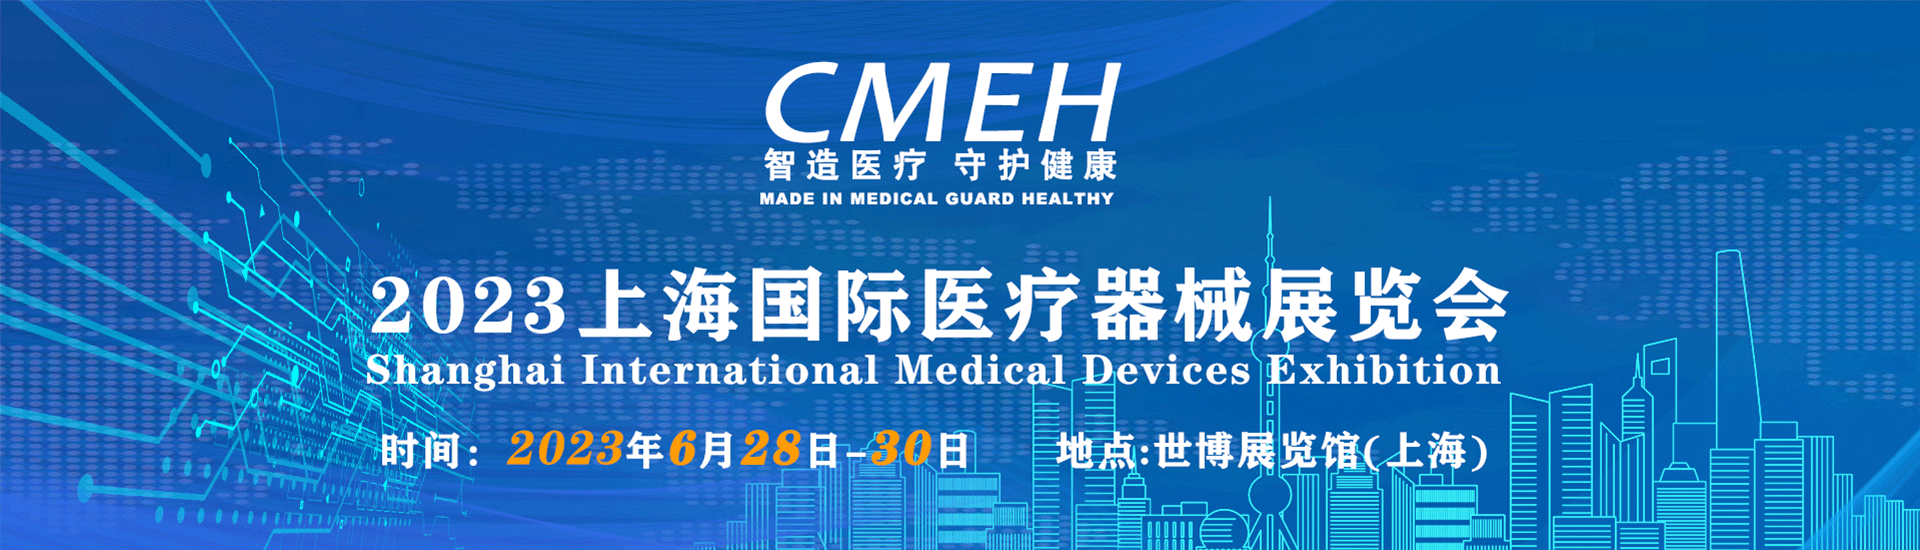 2024年中国医疗器械展-中国医疗器械展会-医疗展